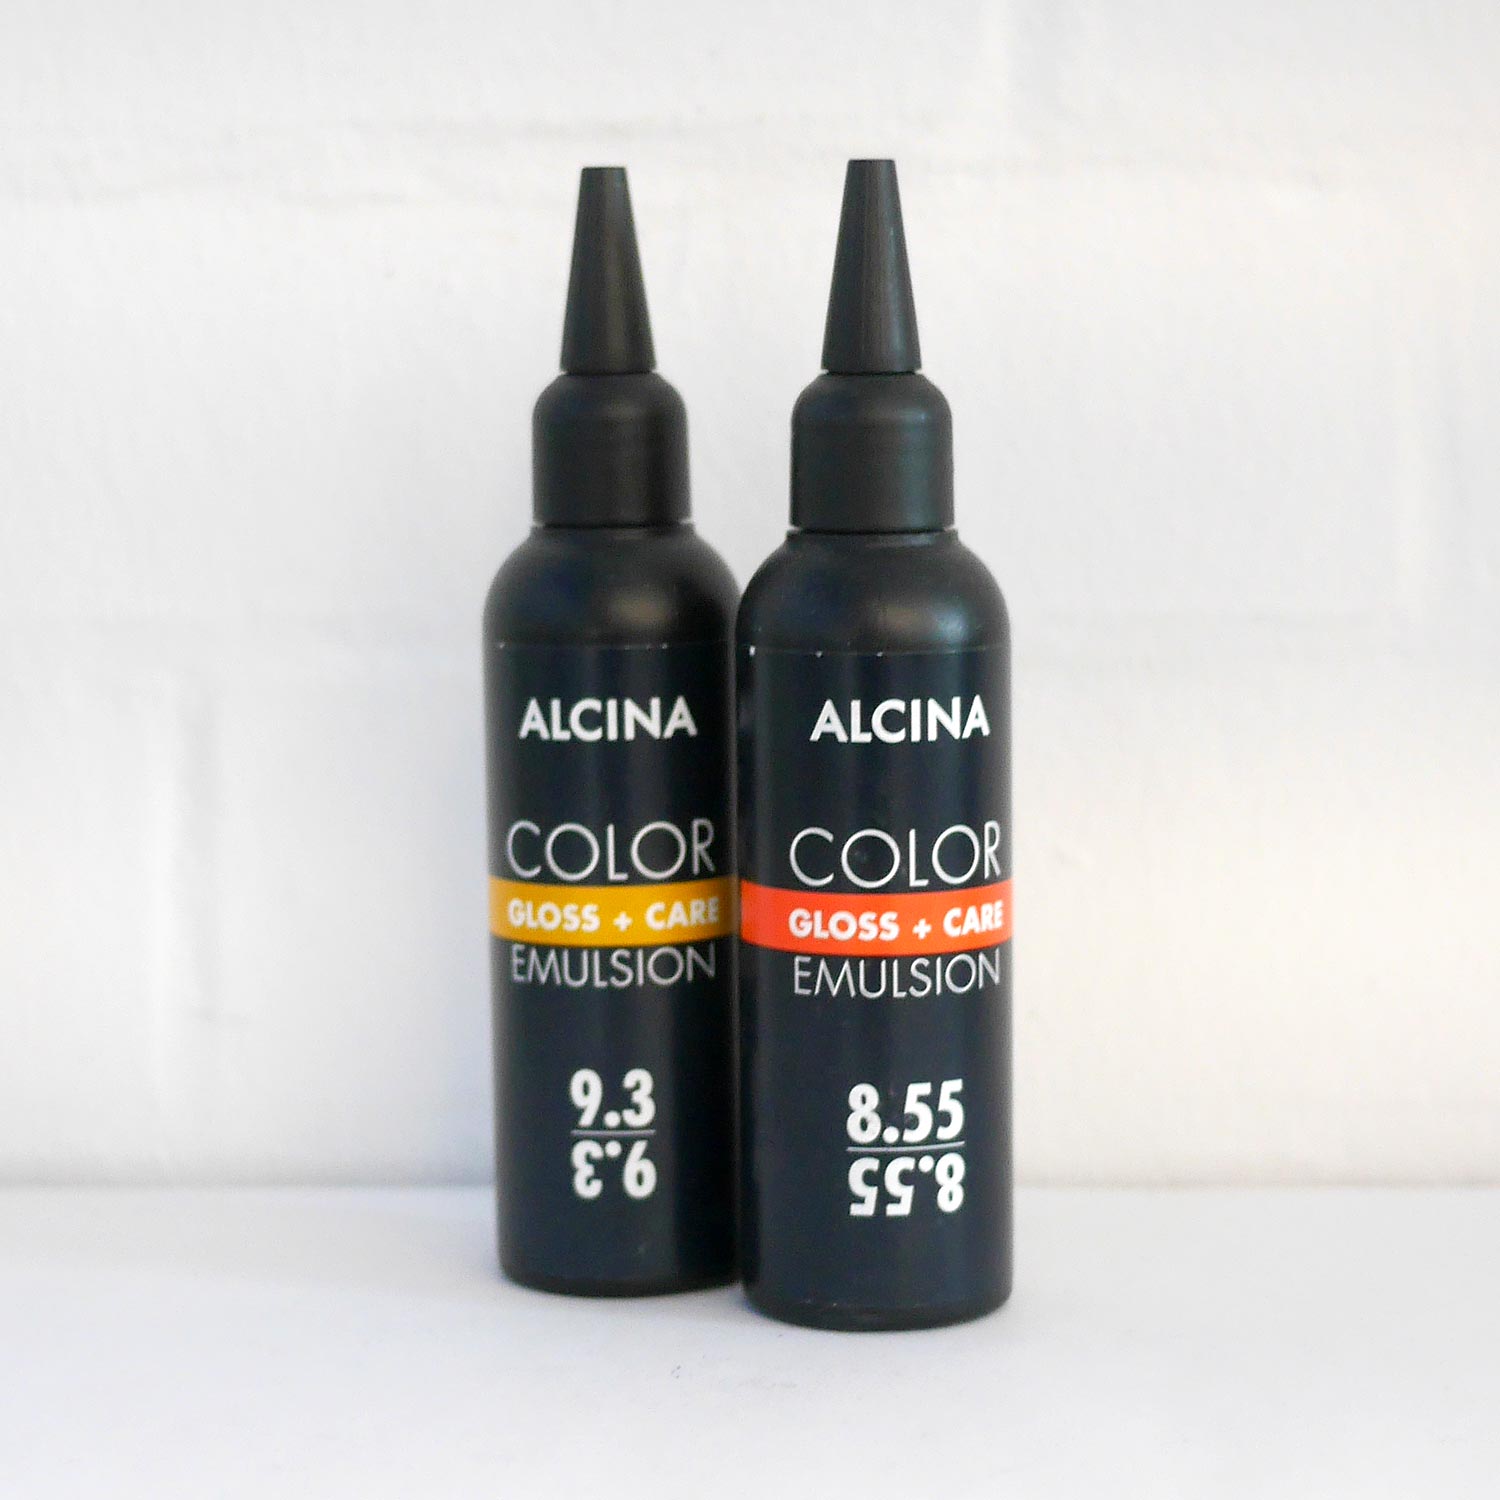 ALCINA Color Emulsion Gloss + Care